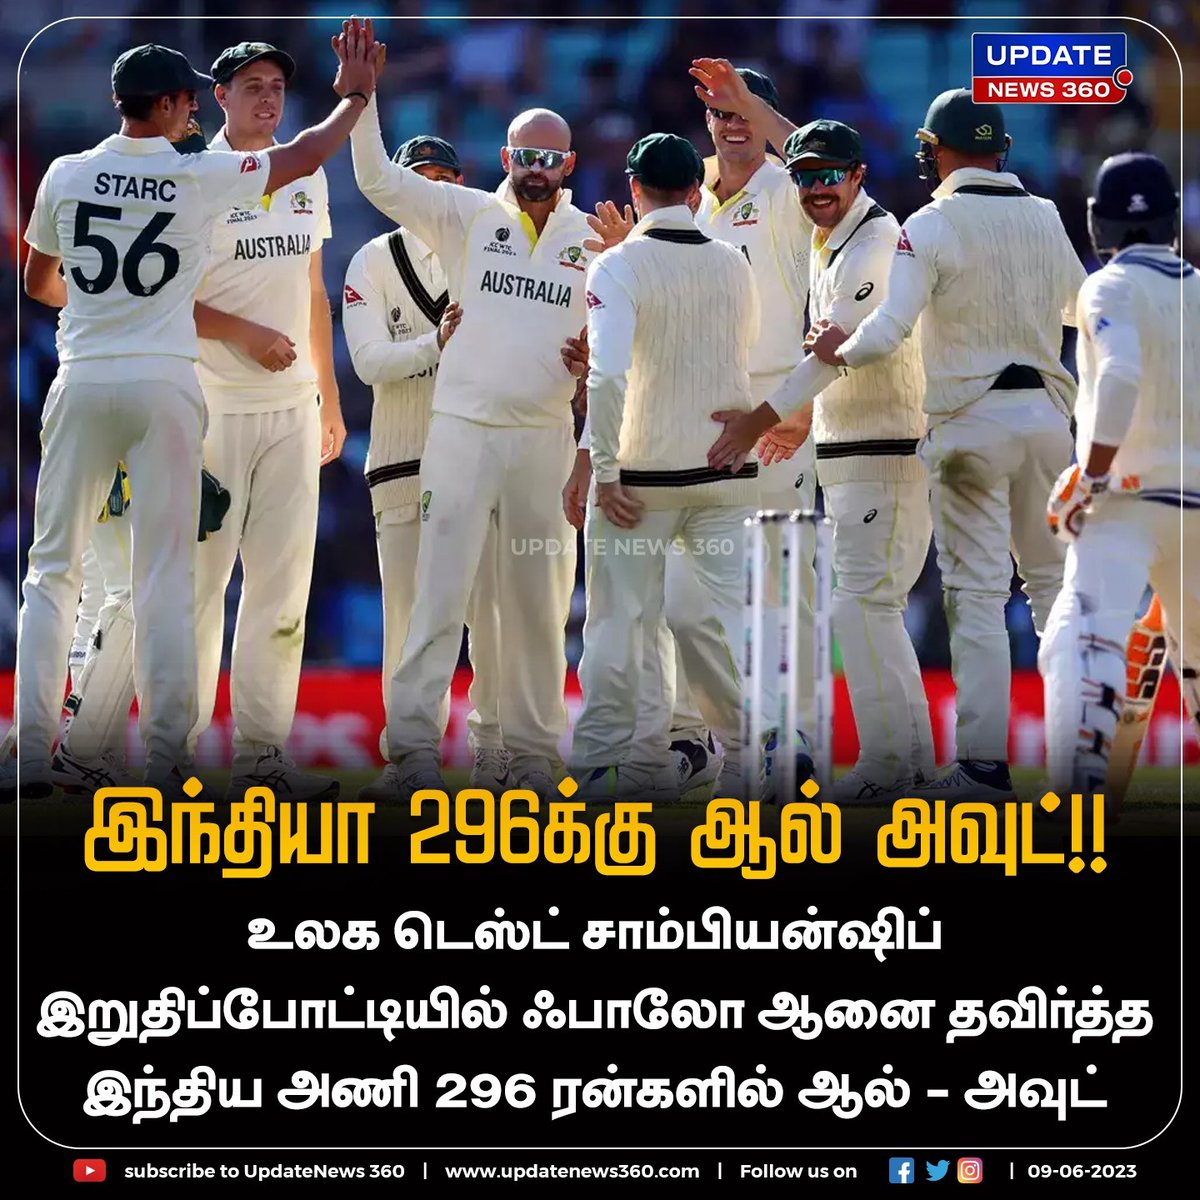 உலக டெஸ்ட் சாம்பியன்ஷிப் போட்டி : இந்தியா முதல் இன்னிங்சில் 296க்கு ஆல் அவுட்!

#UpdateNews | #WorldTestChampionship2023 | #India | #AllOut | #FirstInnings | #CricketNews | #SportNews | #TamilNews | #UpdateNews360